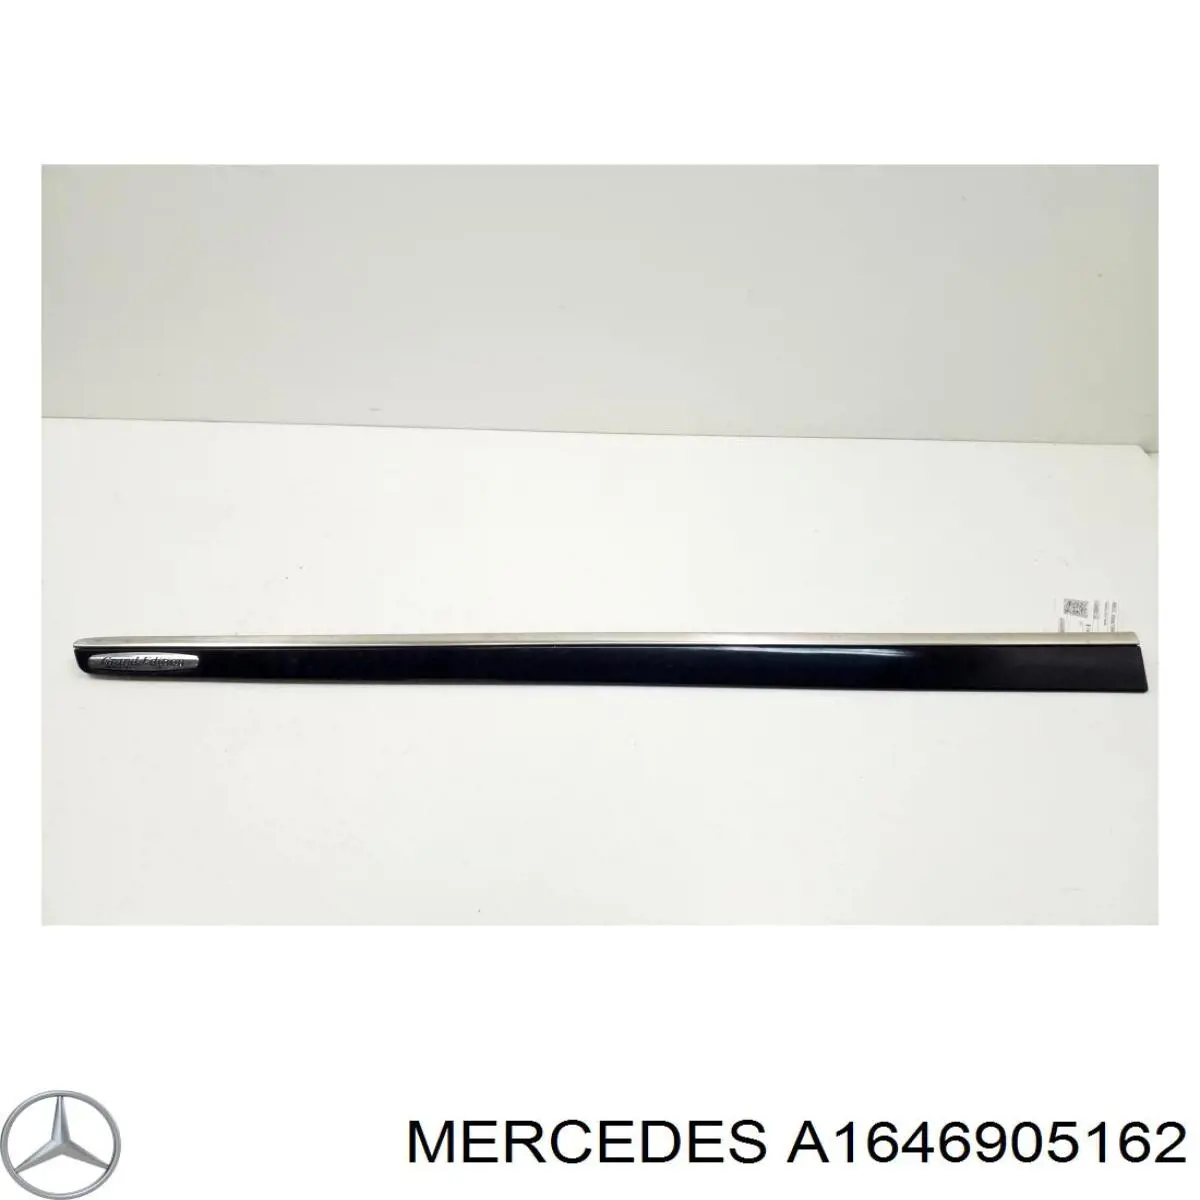 A16469051629999 Mercedes moldura da porta dianteira esquerda